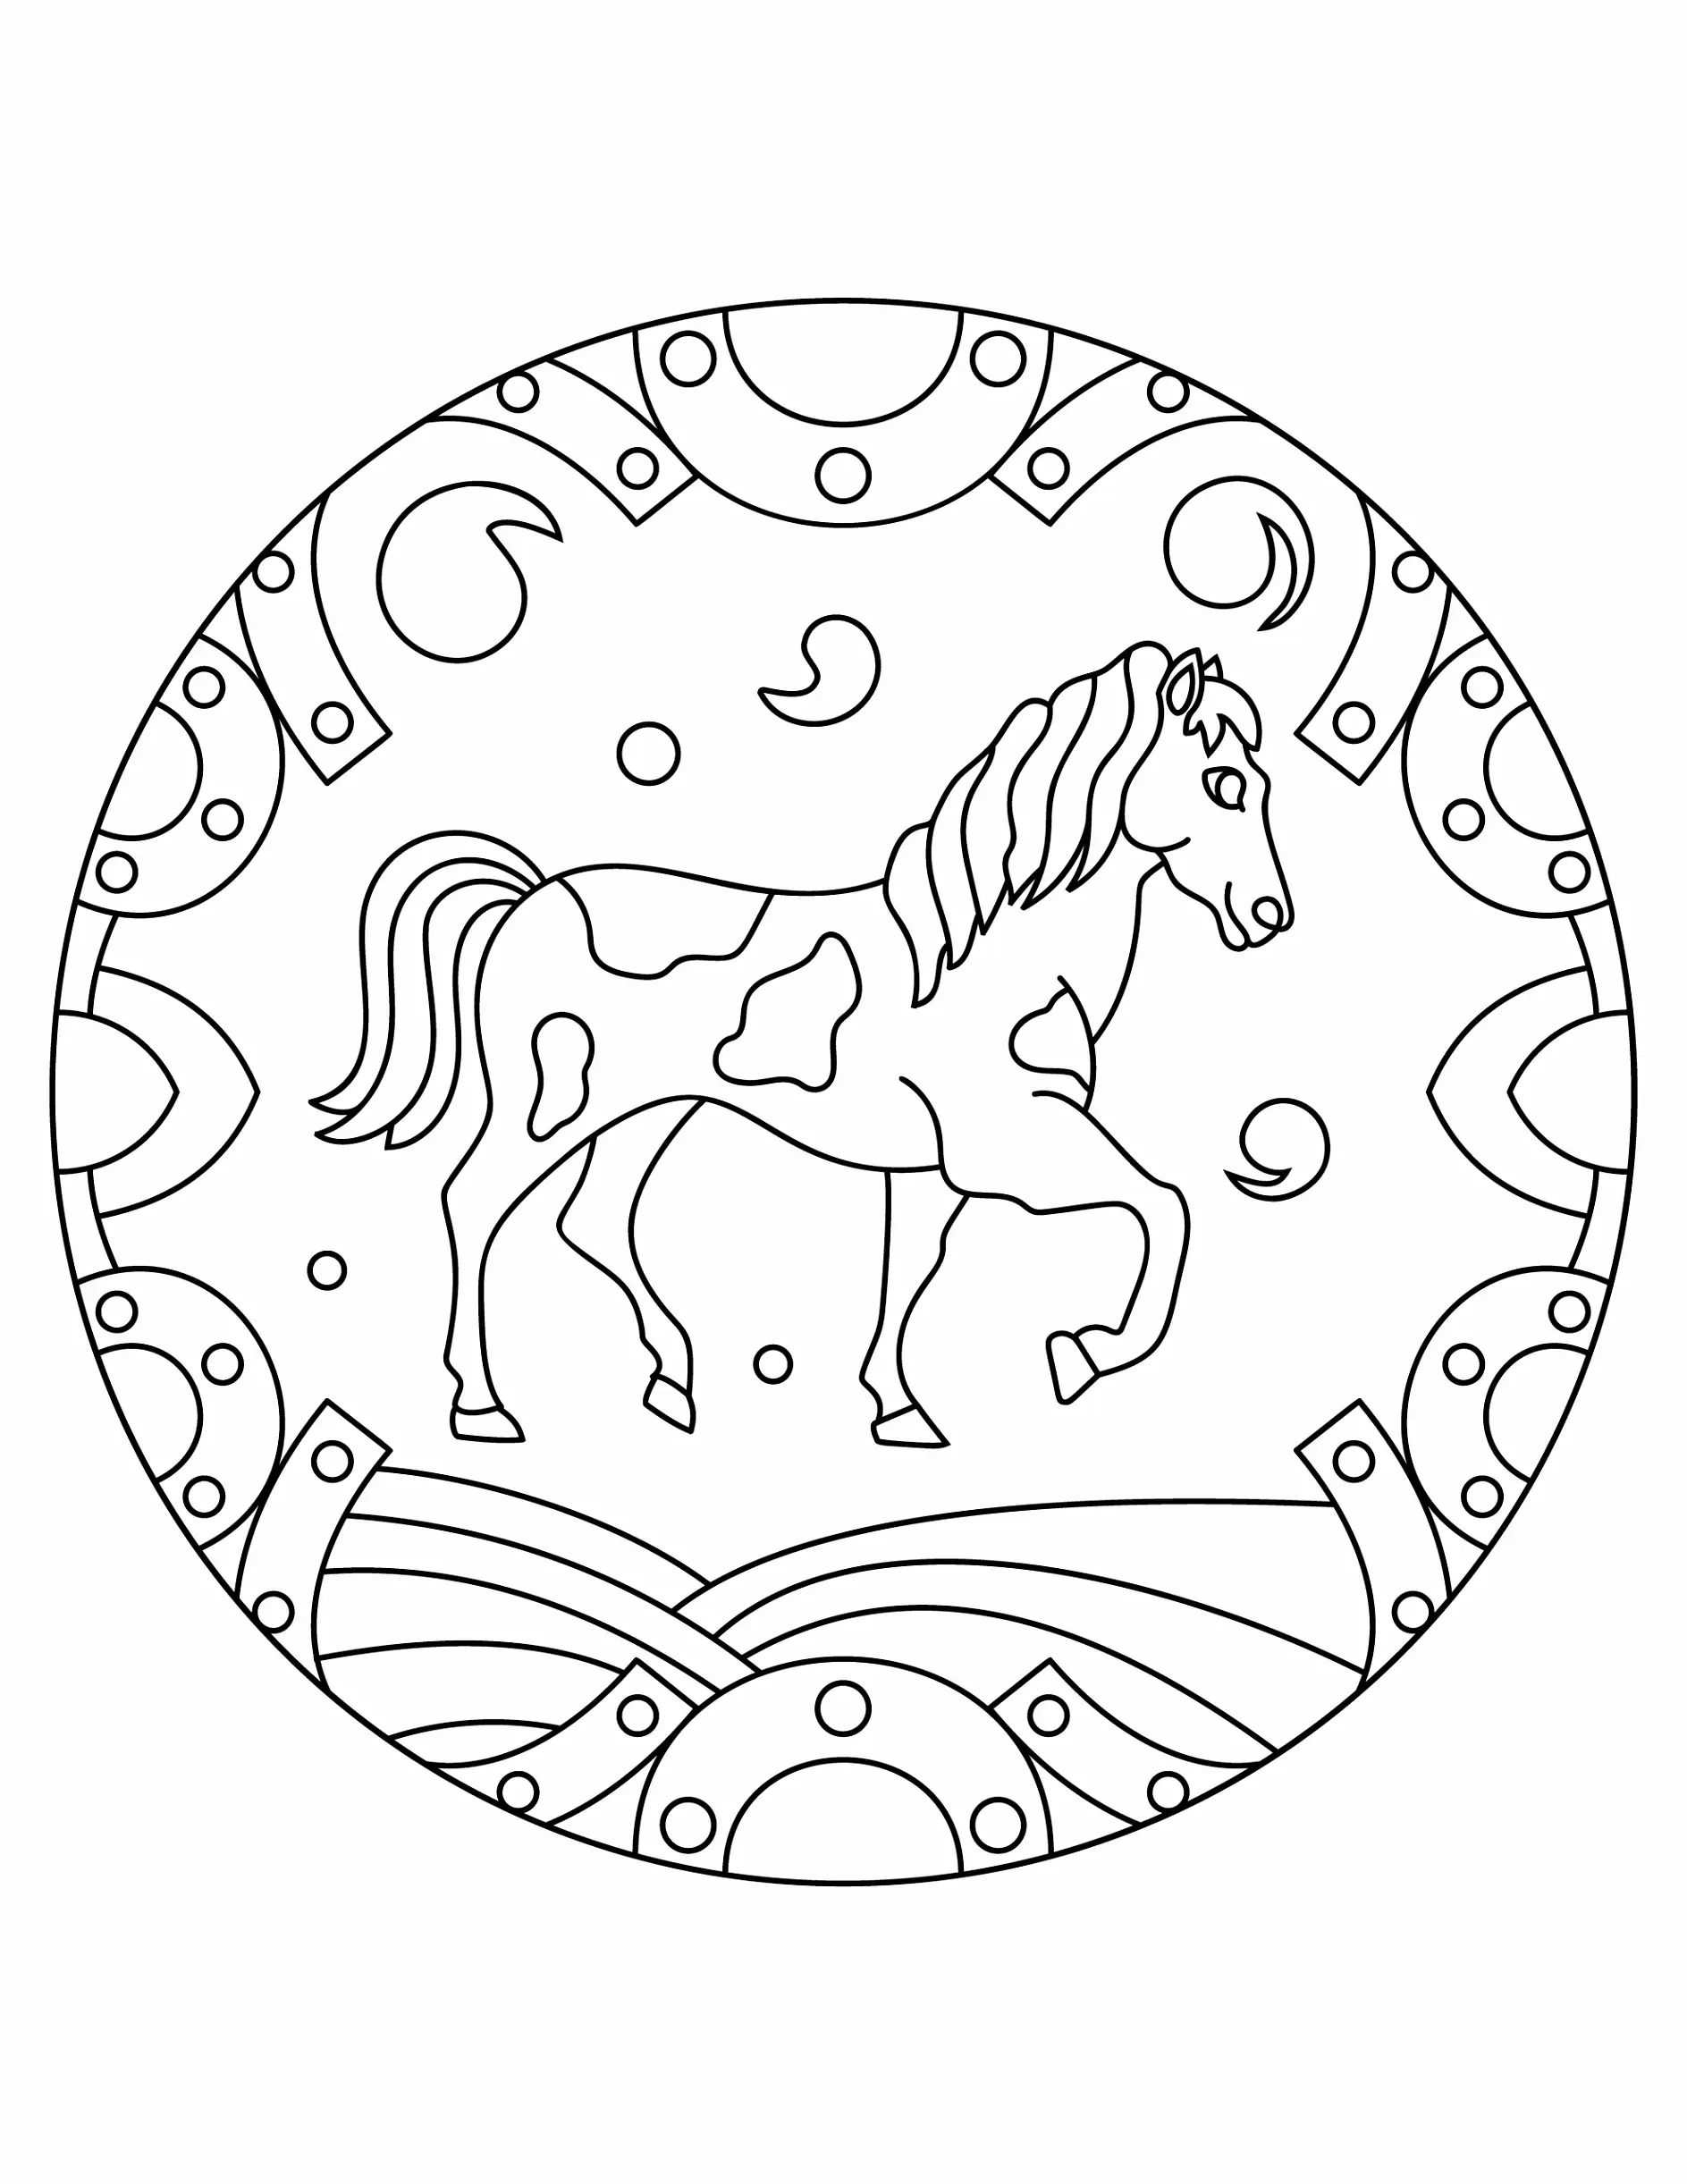 Ausmalbild Mandala mit Pferd und Hufeisenmuster